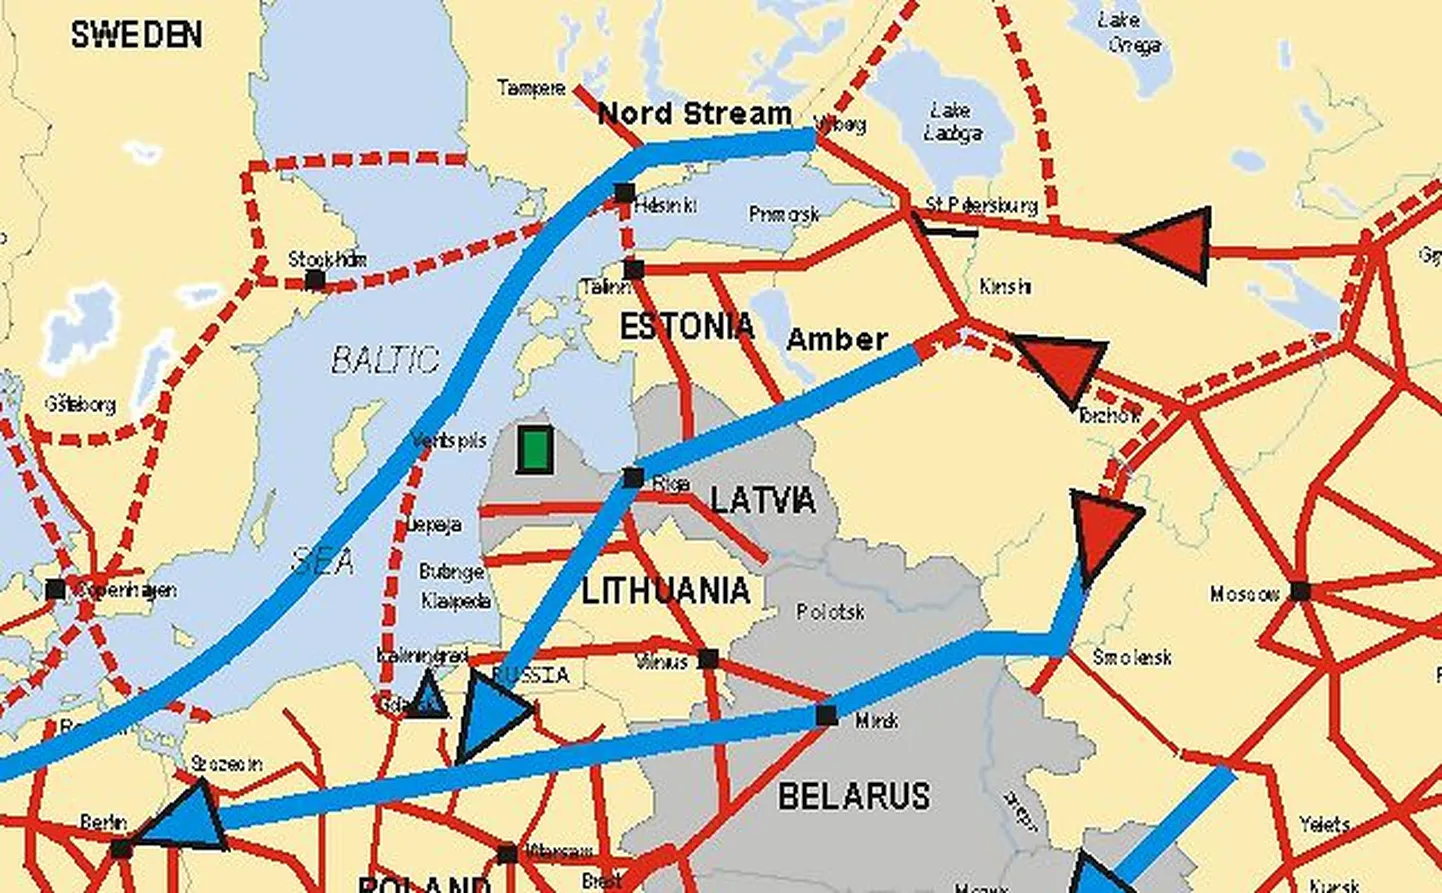 Ida-Euroopa olemasolevad (punased) ja plaanitavad (sinised) gaasijuhtmed. Balti riigid ja Poola tahavad, et maismaal kulgevale juhtmeprojektile Amber pöörataks sama palju tähelepanu kui merre kavatsetavale juhtmele Nord Stream.